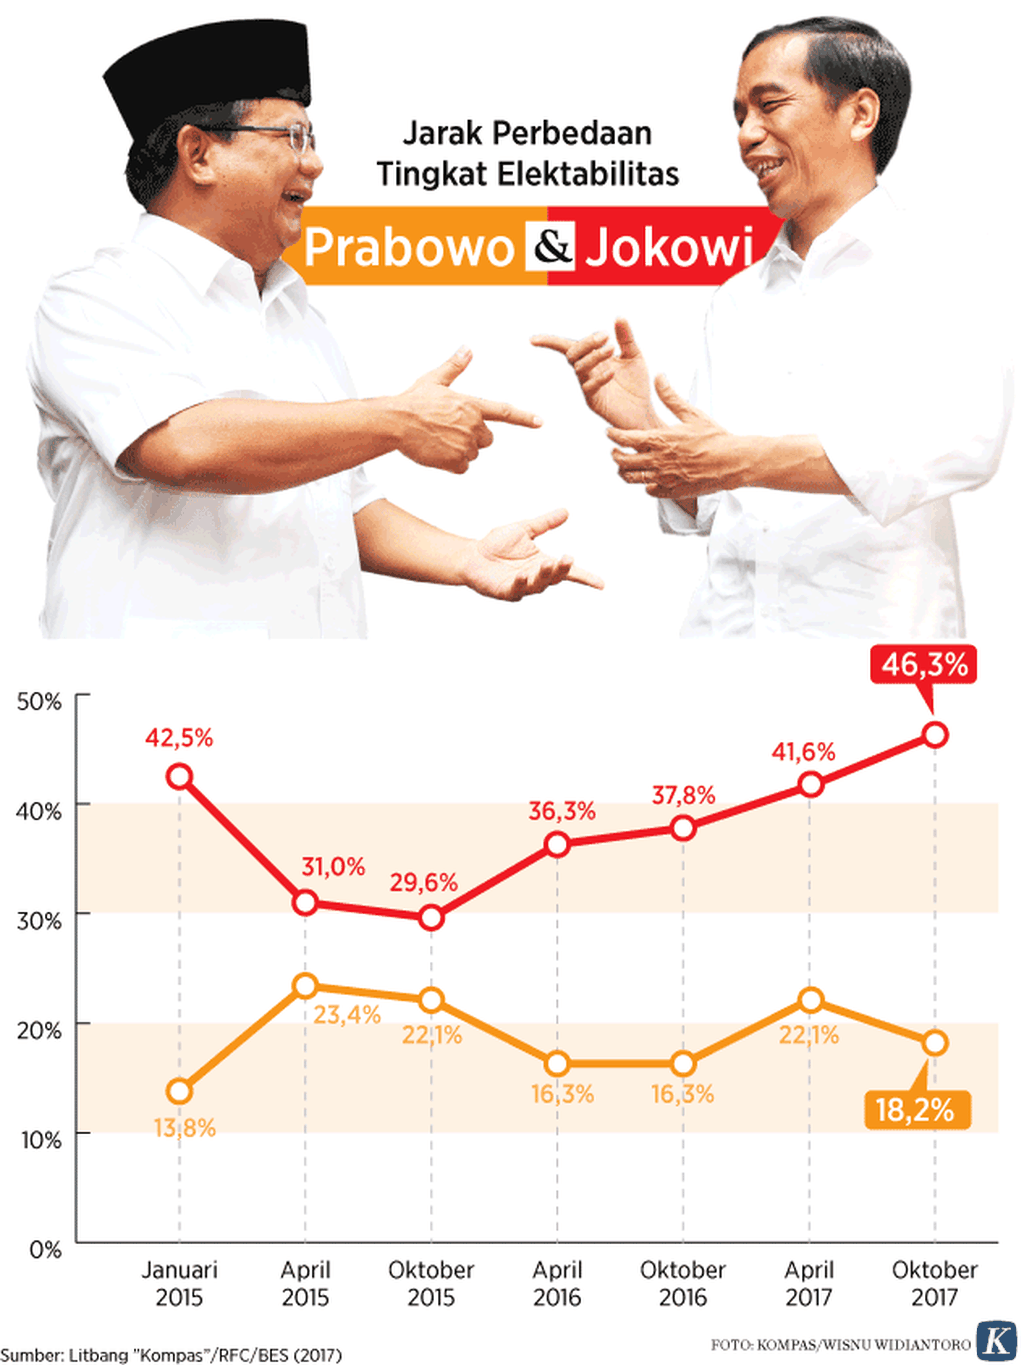 https://cdn-assetd.kompas.id/Vnr0b26P4HWzqky-AYv6-1XdeT8=/1024x1365/https%3A%2F%2Fkompas.id%2Fwp-content%2Fuploads%2F2019%2F07%2F20171118-p-ard-Prabowo-Jokowi.png